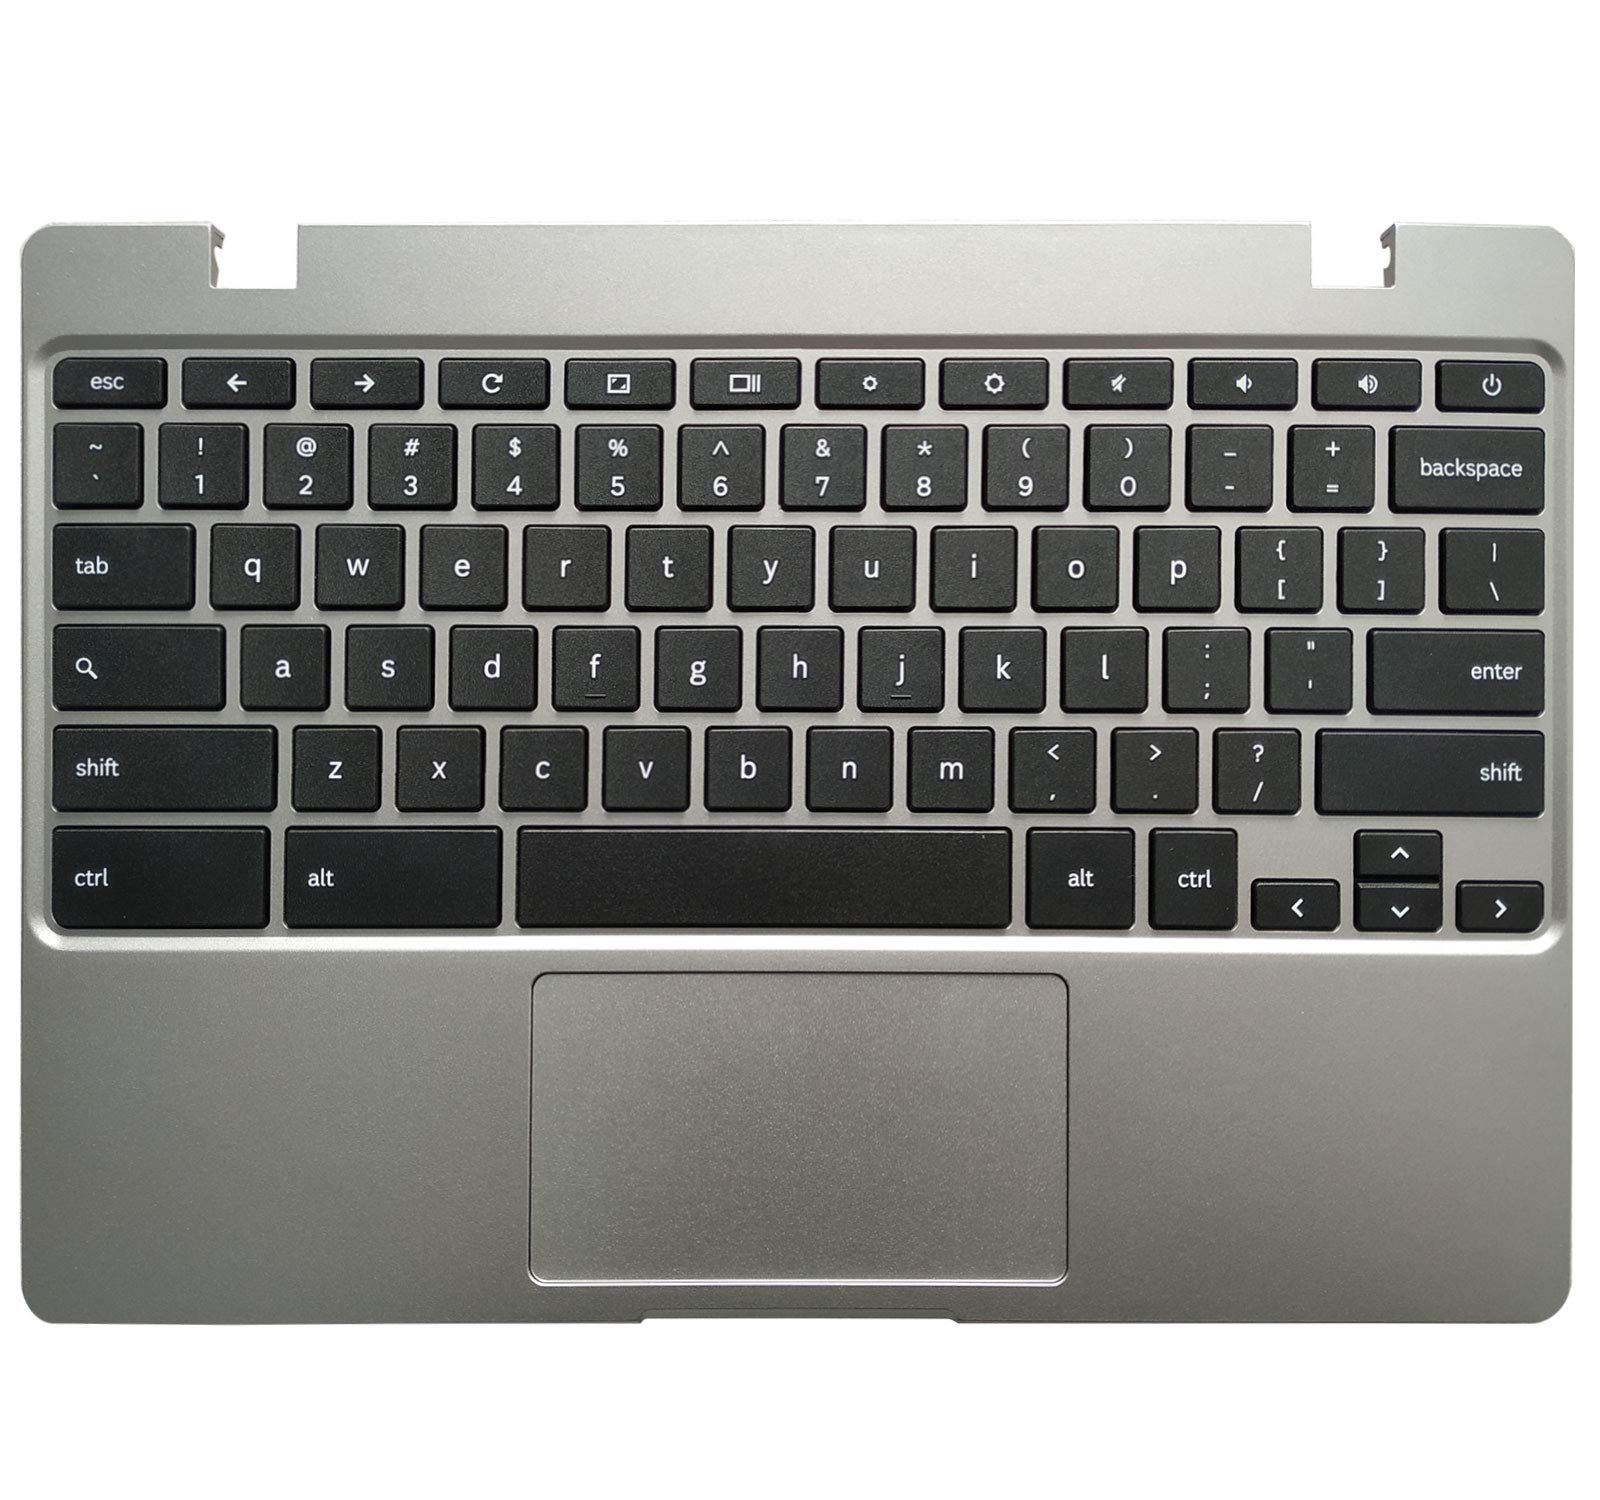 Chromebook keyboard settings menu